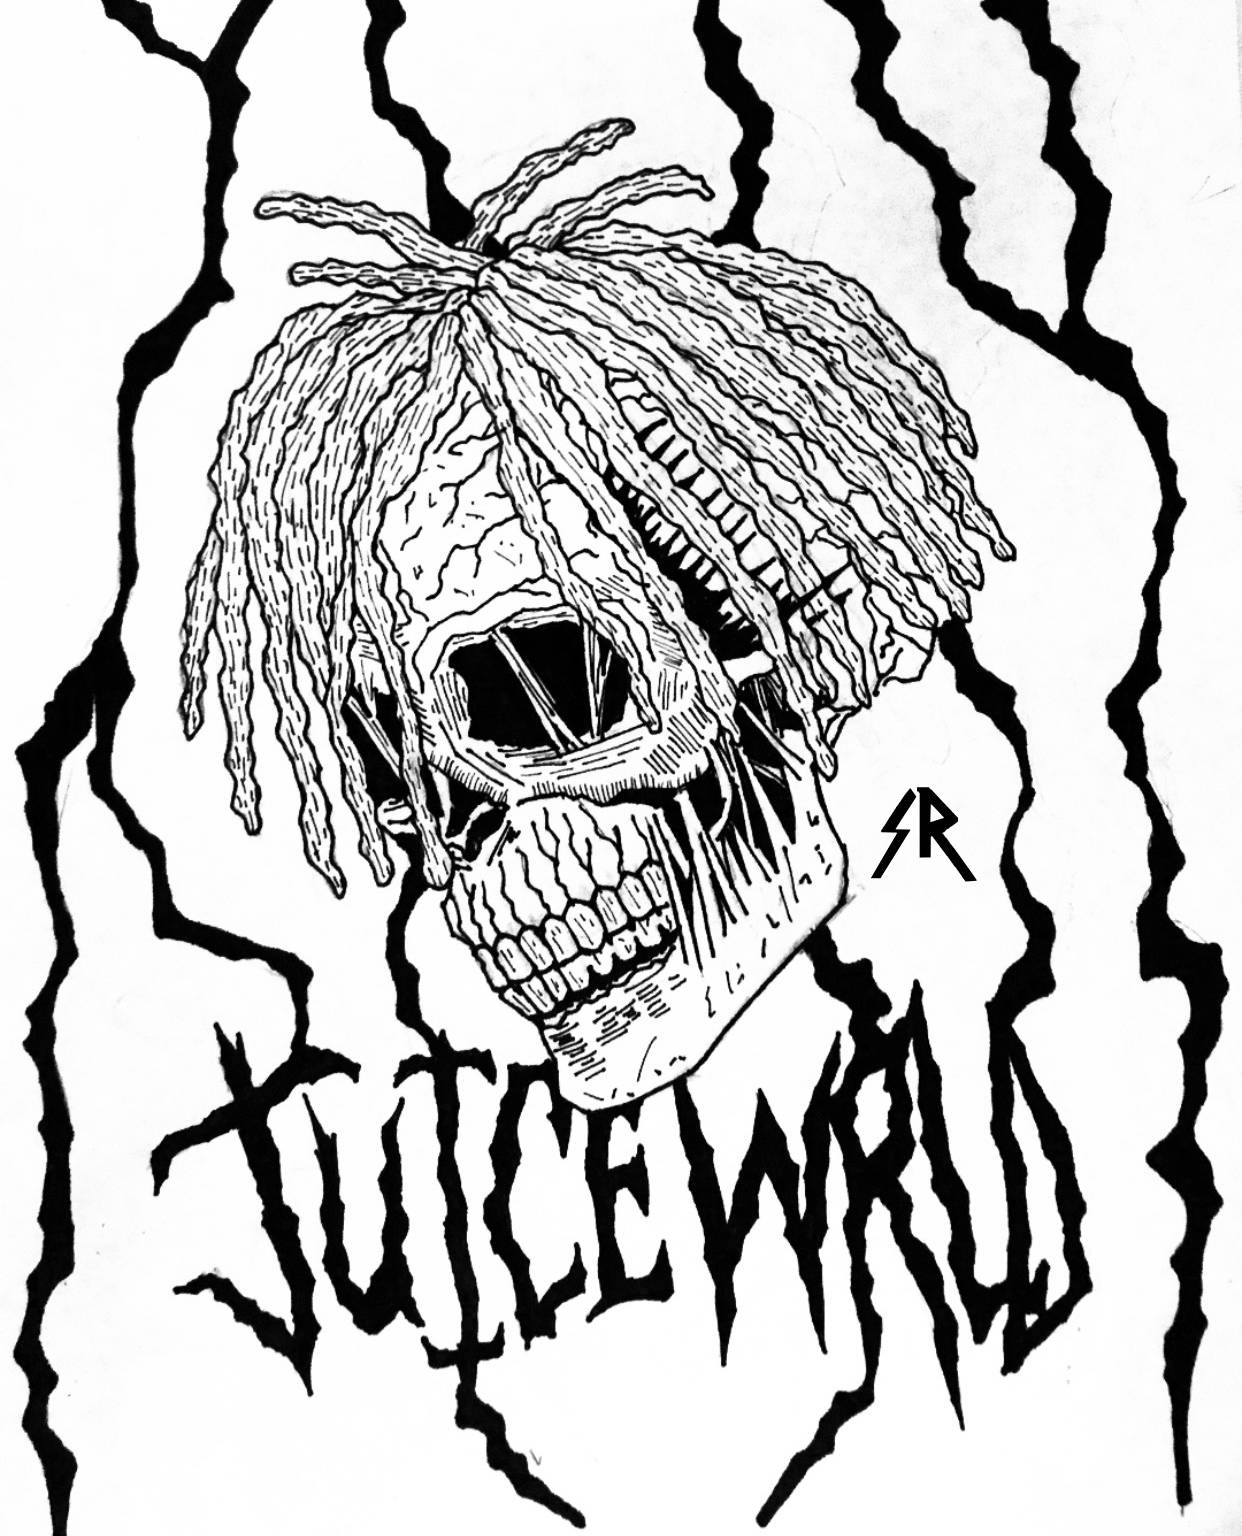 Juice Wrld 999 Skull Logo